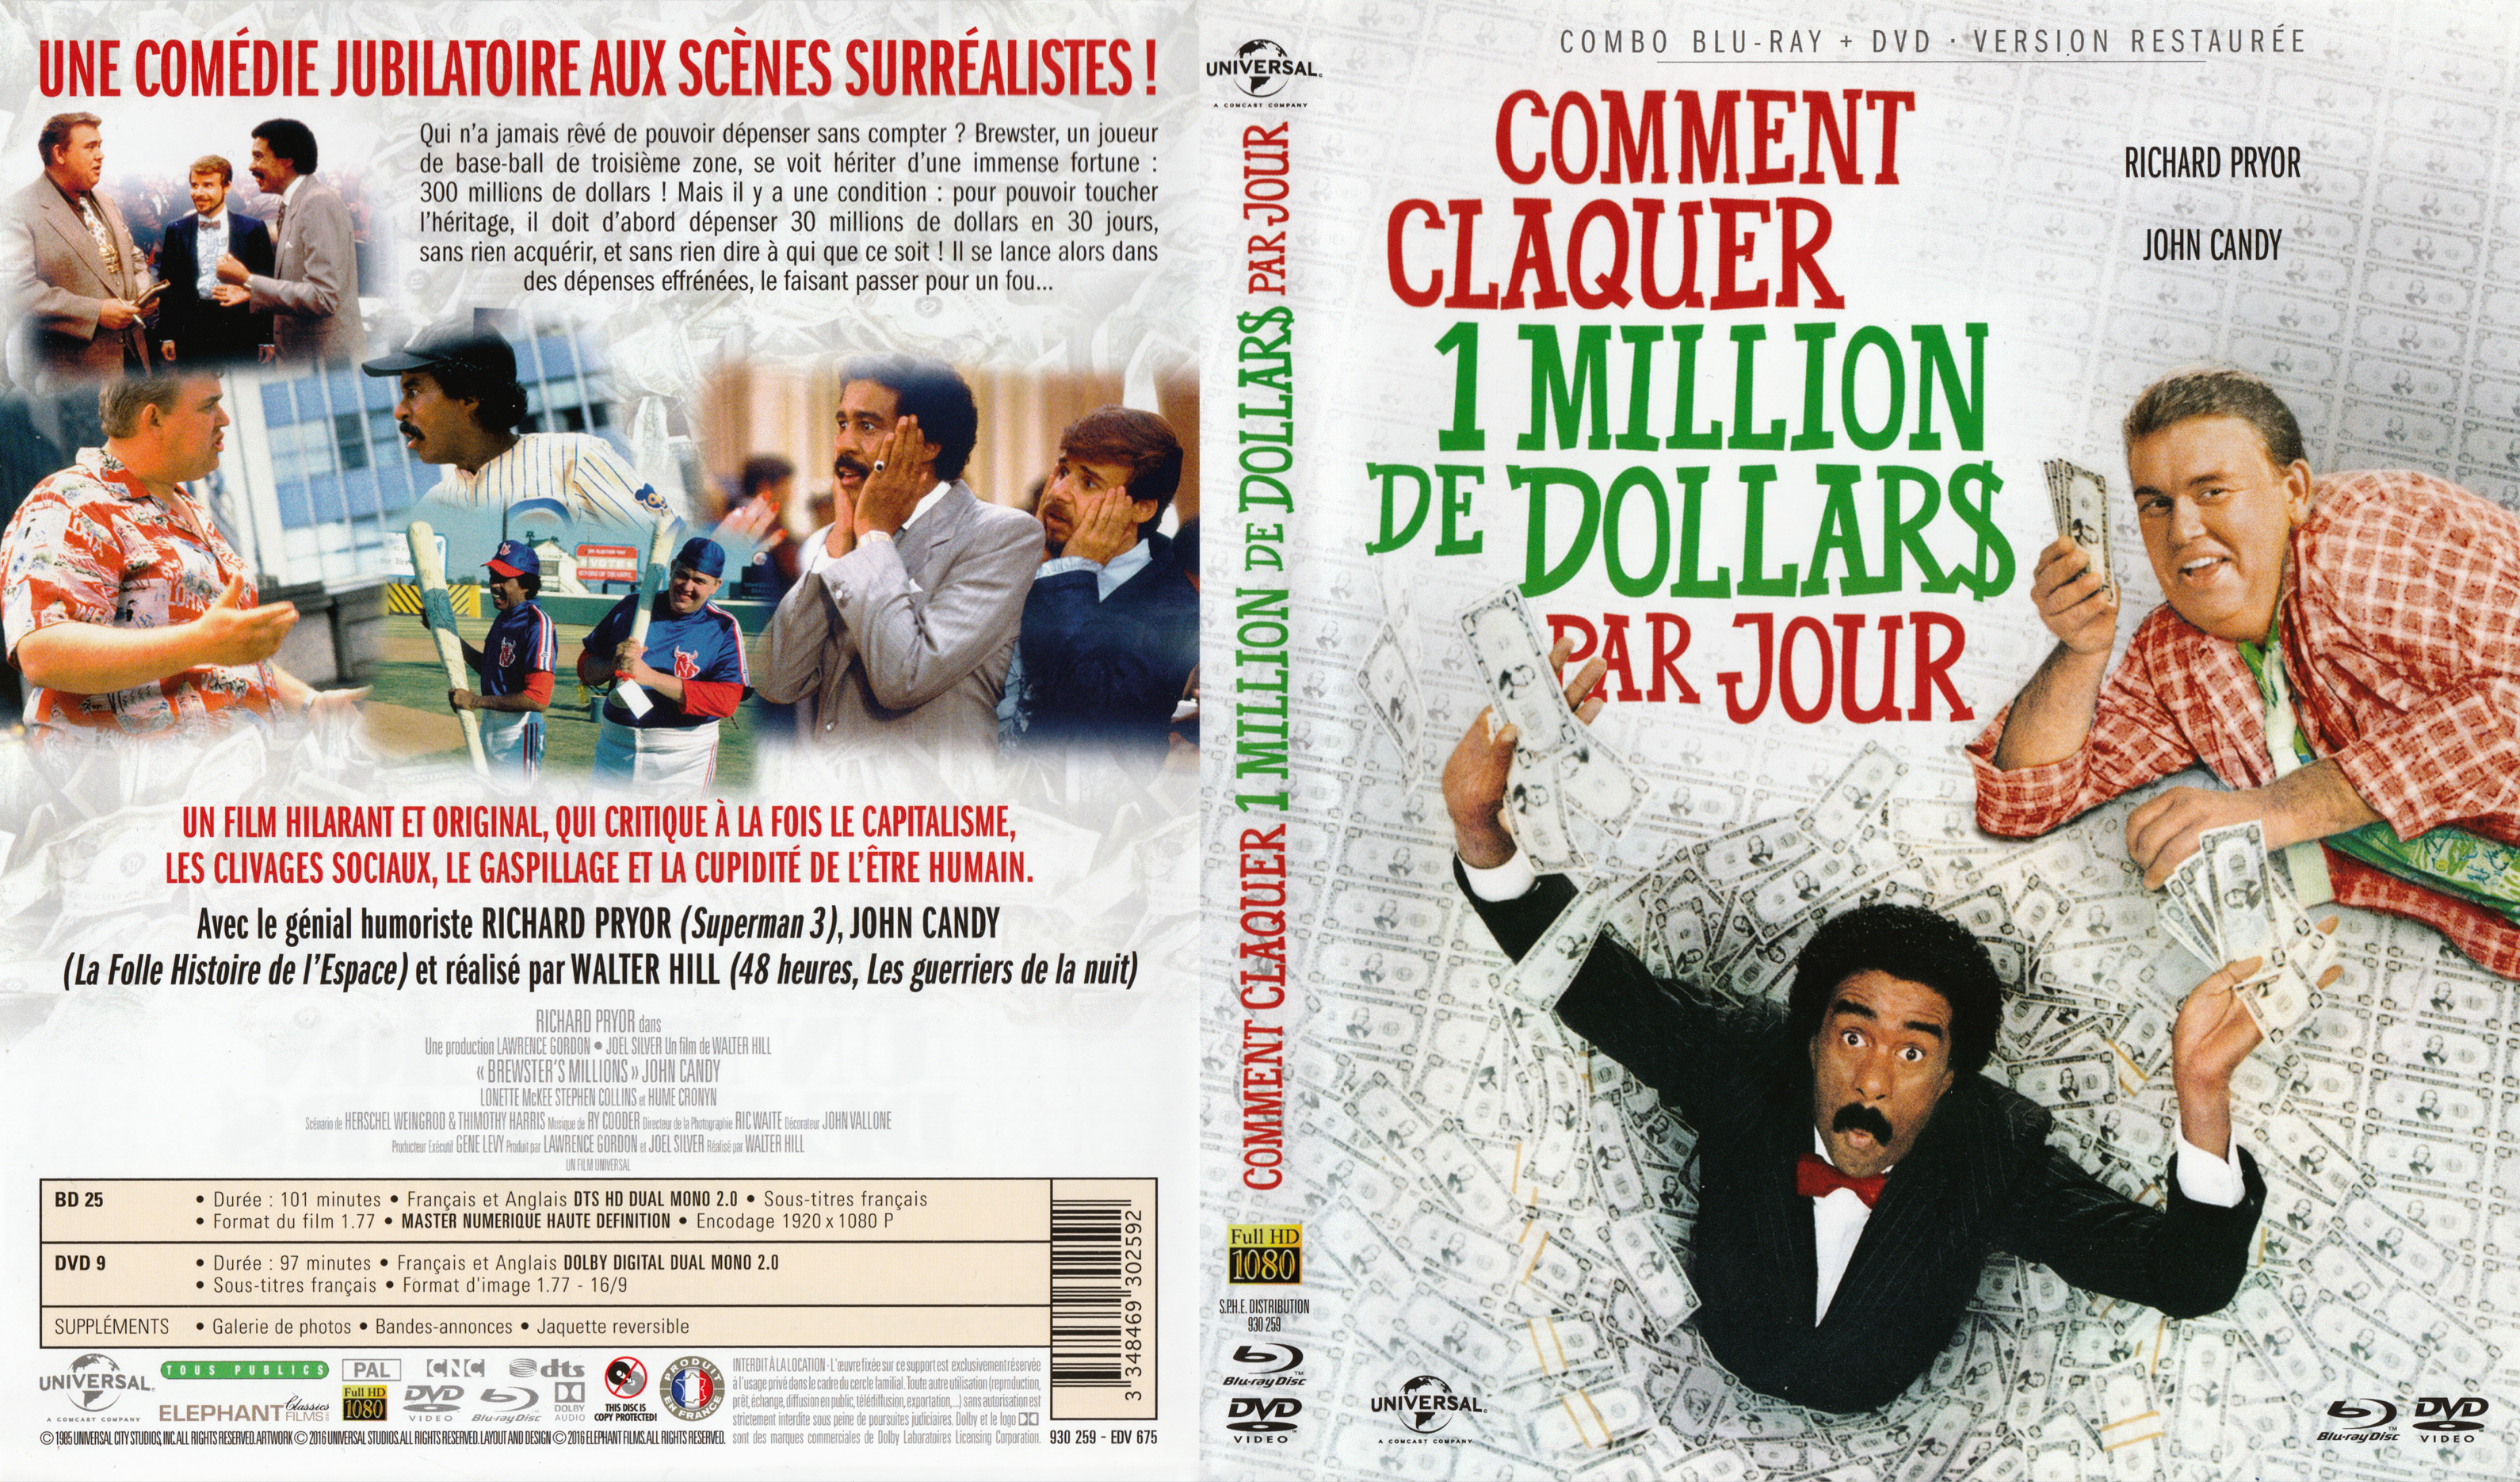 Jaquette DVD Comment claquer un million de dollars par jour (BLU-RAY)